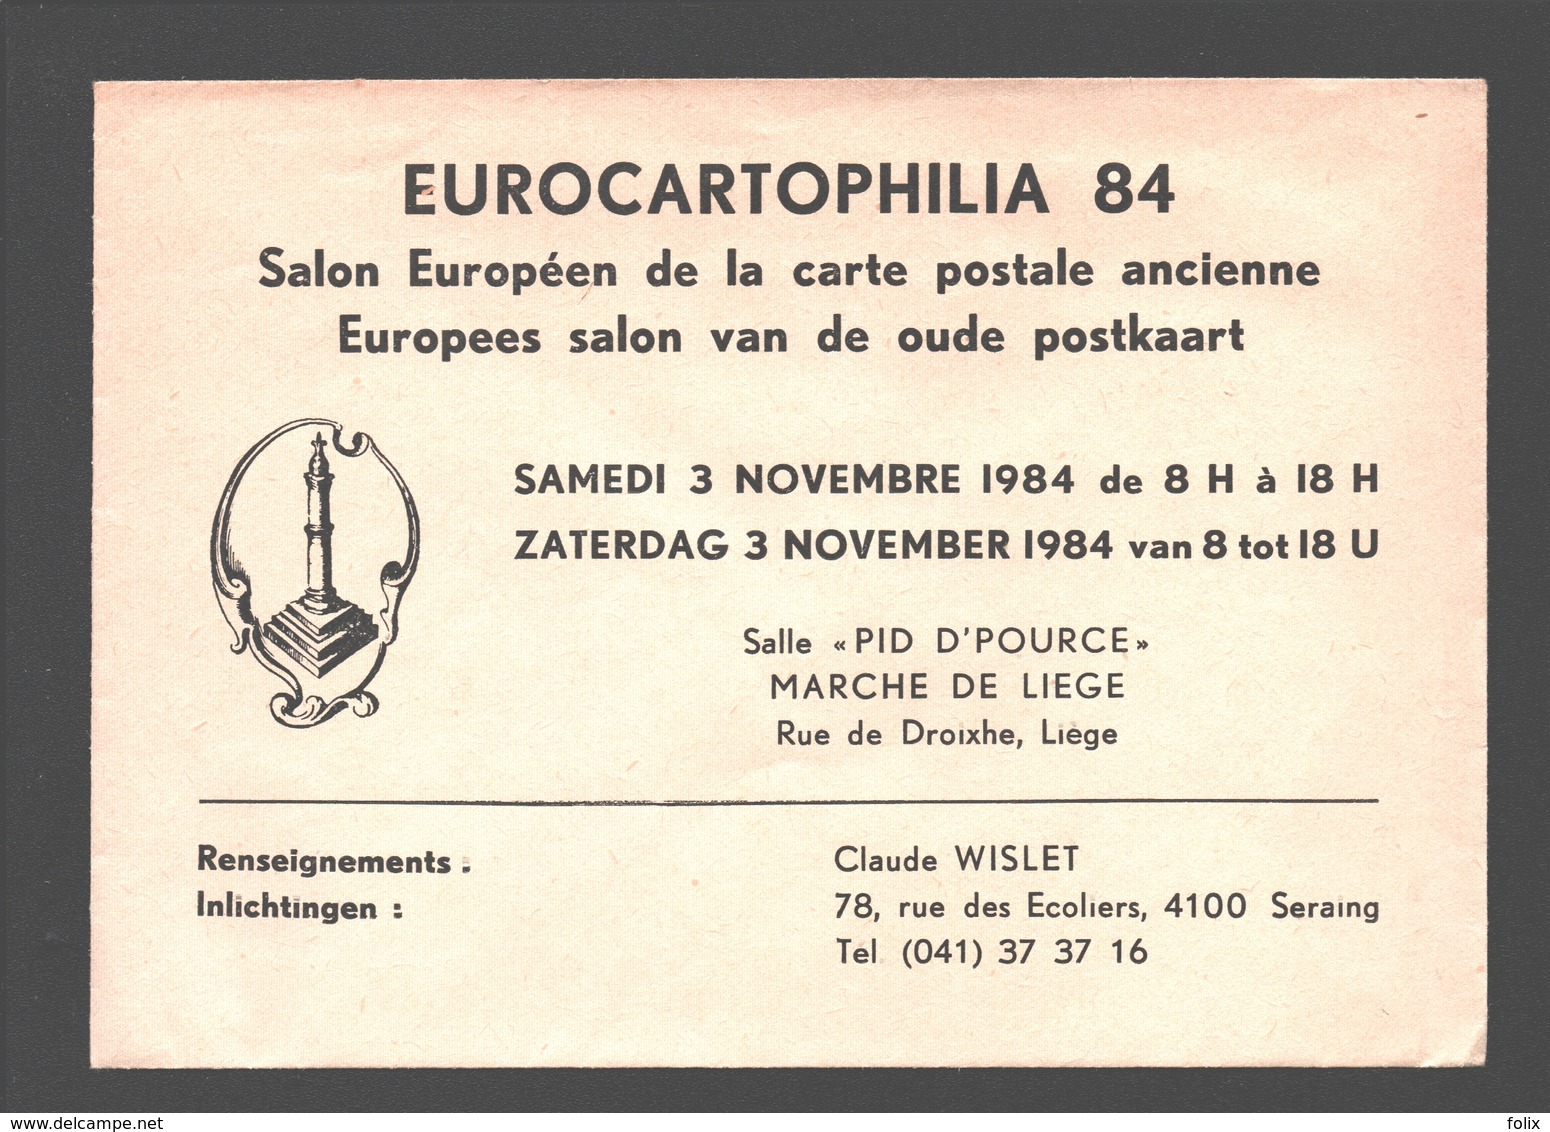 Cartophilie - Envelop/ Enveloppe Publicitaire - Eurocartophilia 84 - Liège - Salon Européen De La Carte Postale Ancienne - Bourses & Salons De Collections